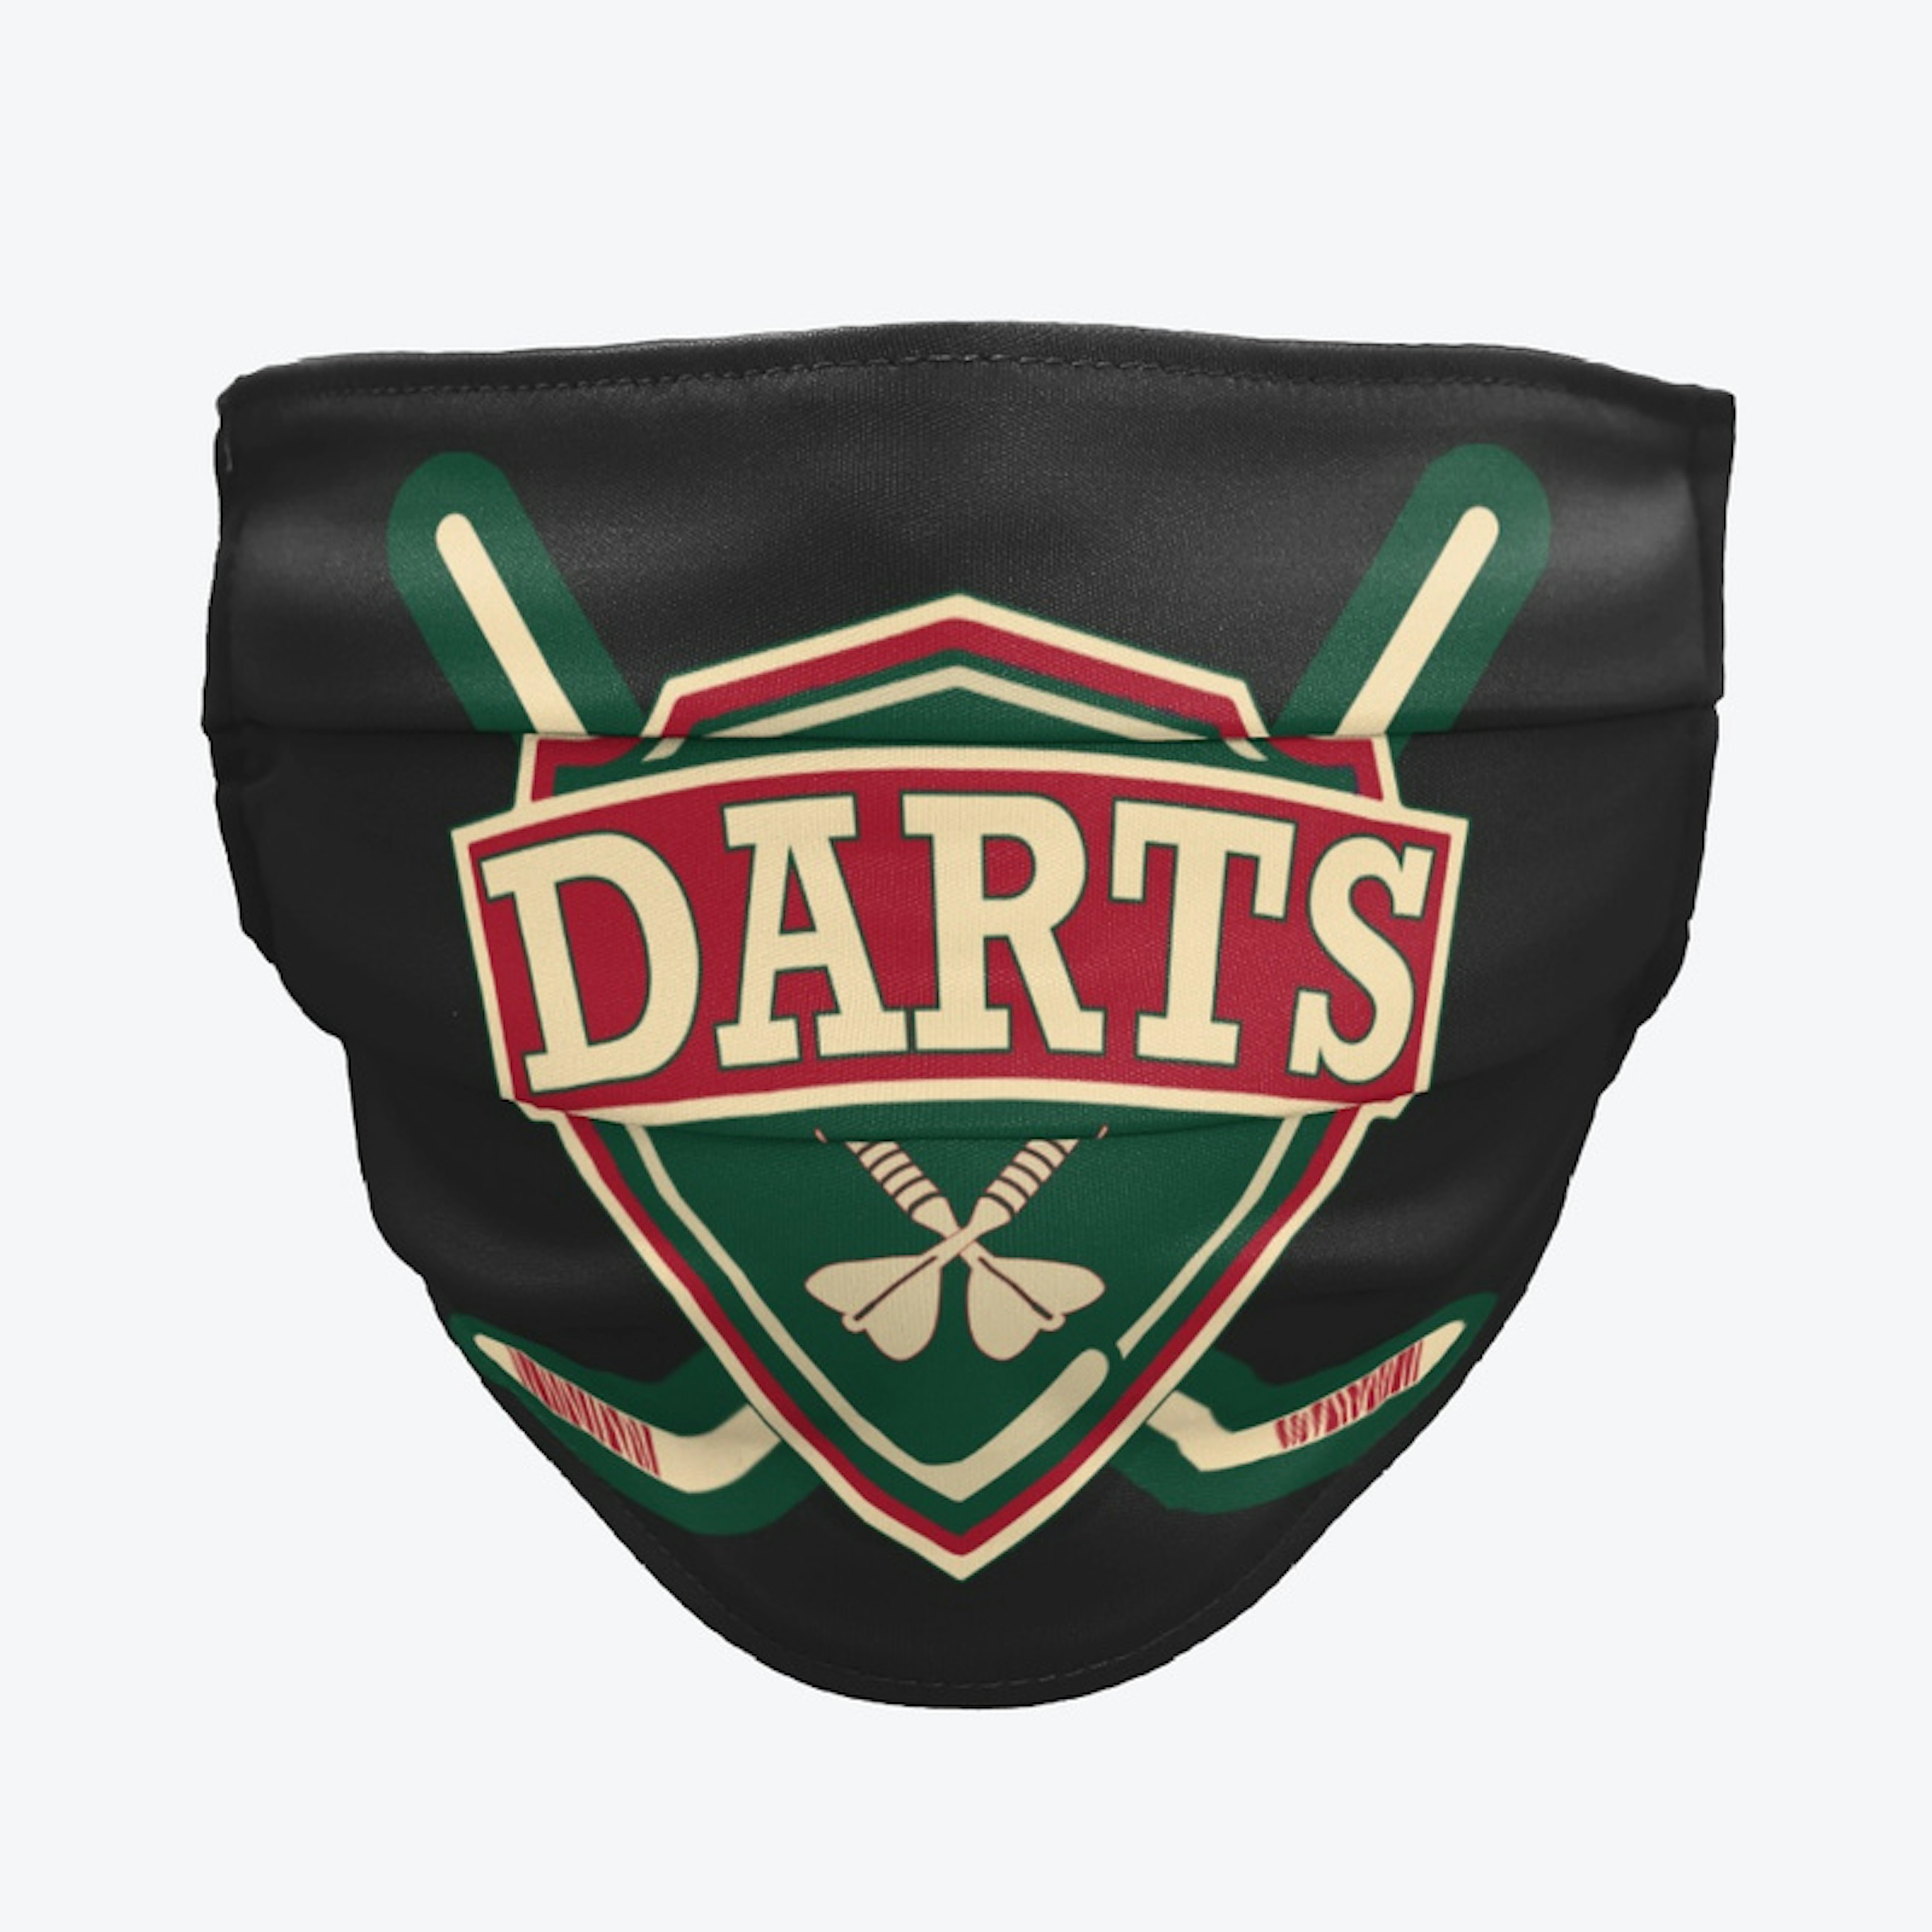 Teammates Darts